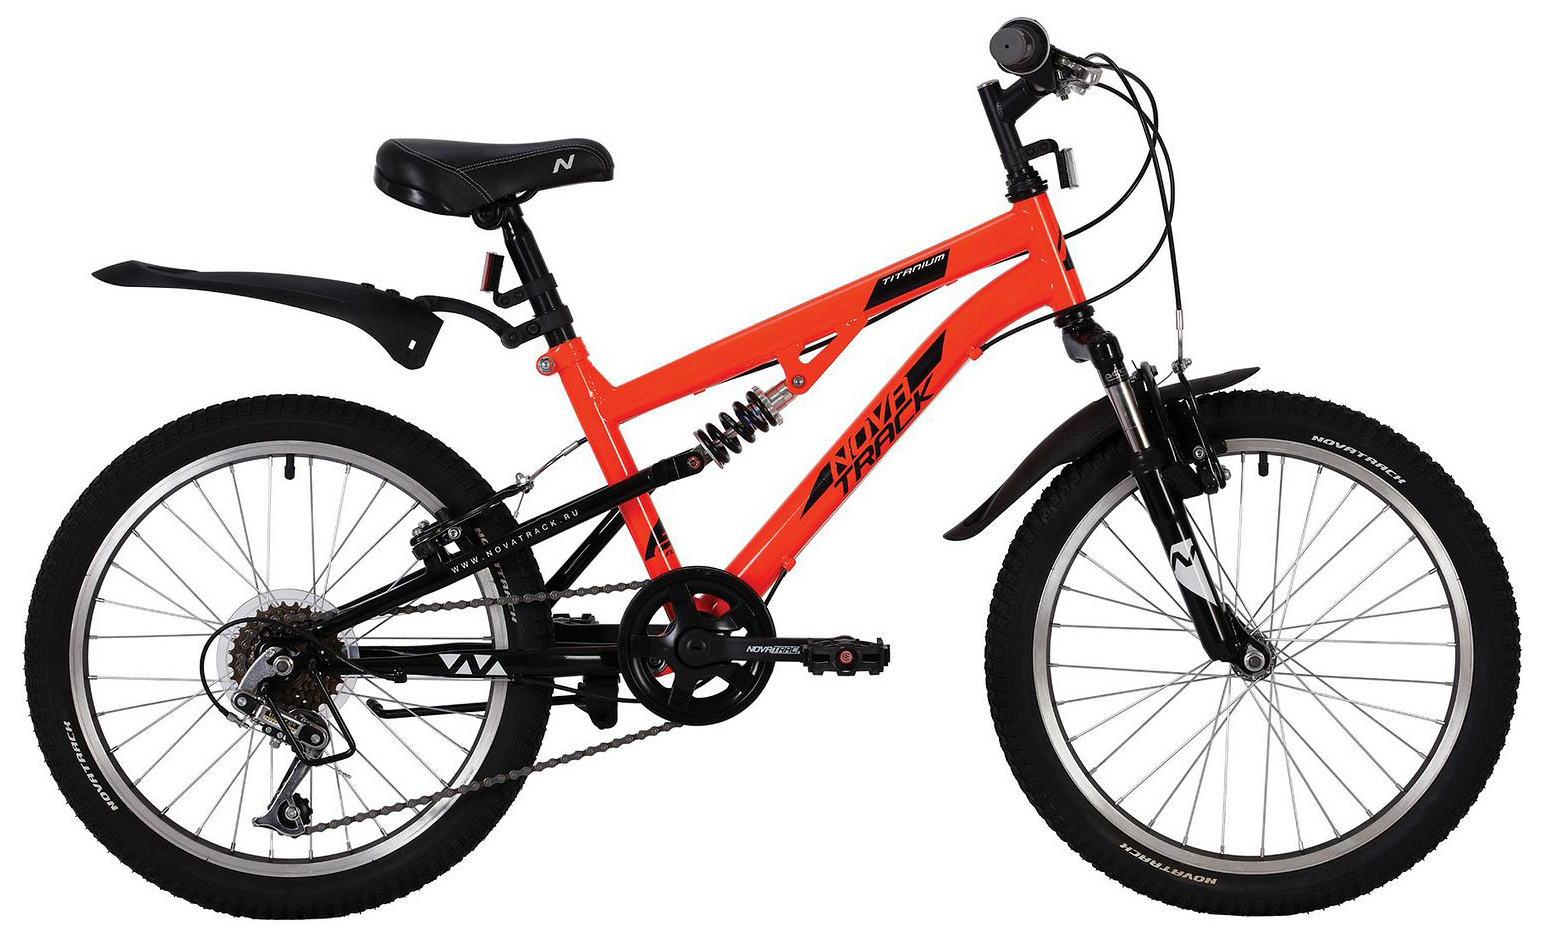  Отзывы о Детском велосипеде Novatrack Titanium 6-sp. 20 2020